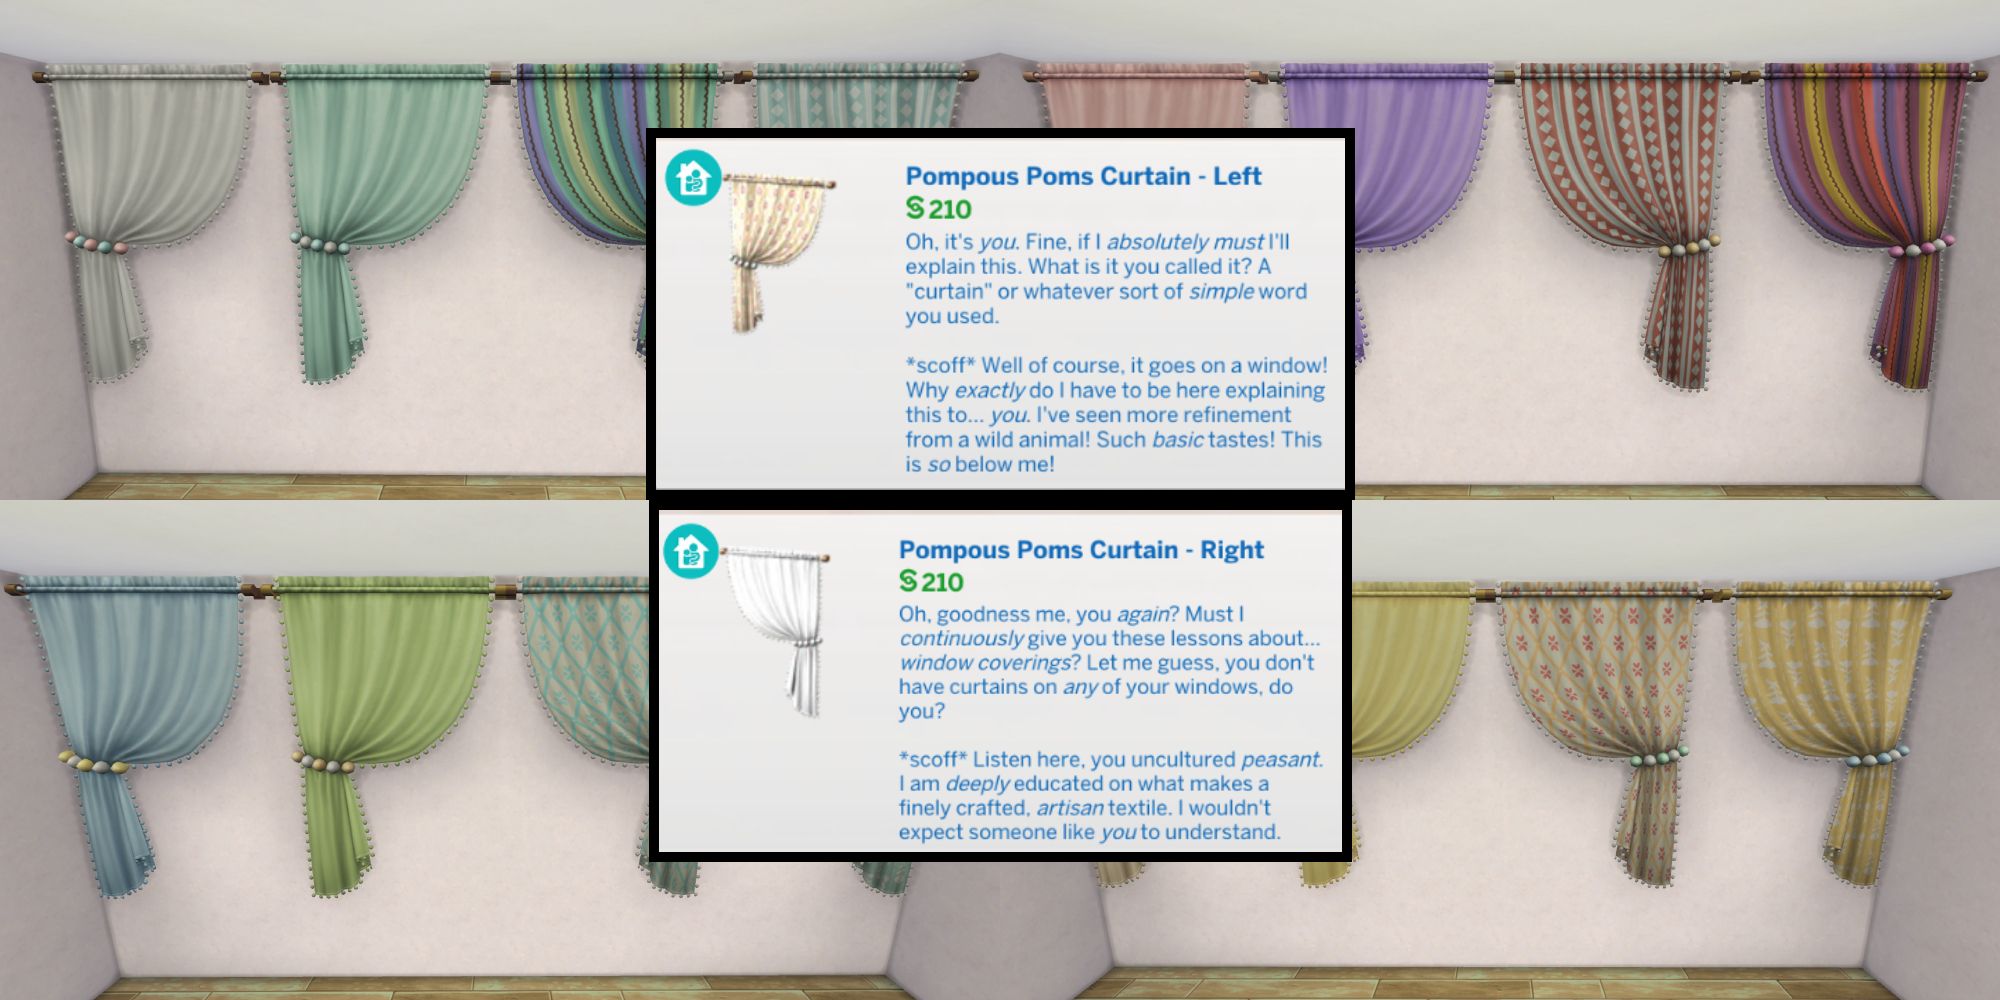 The Pompous Poms Curtains has a funny description in build/buy mode